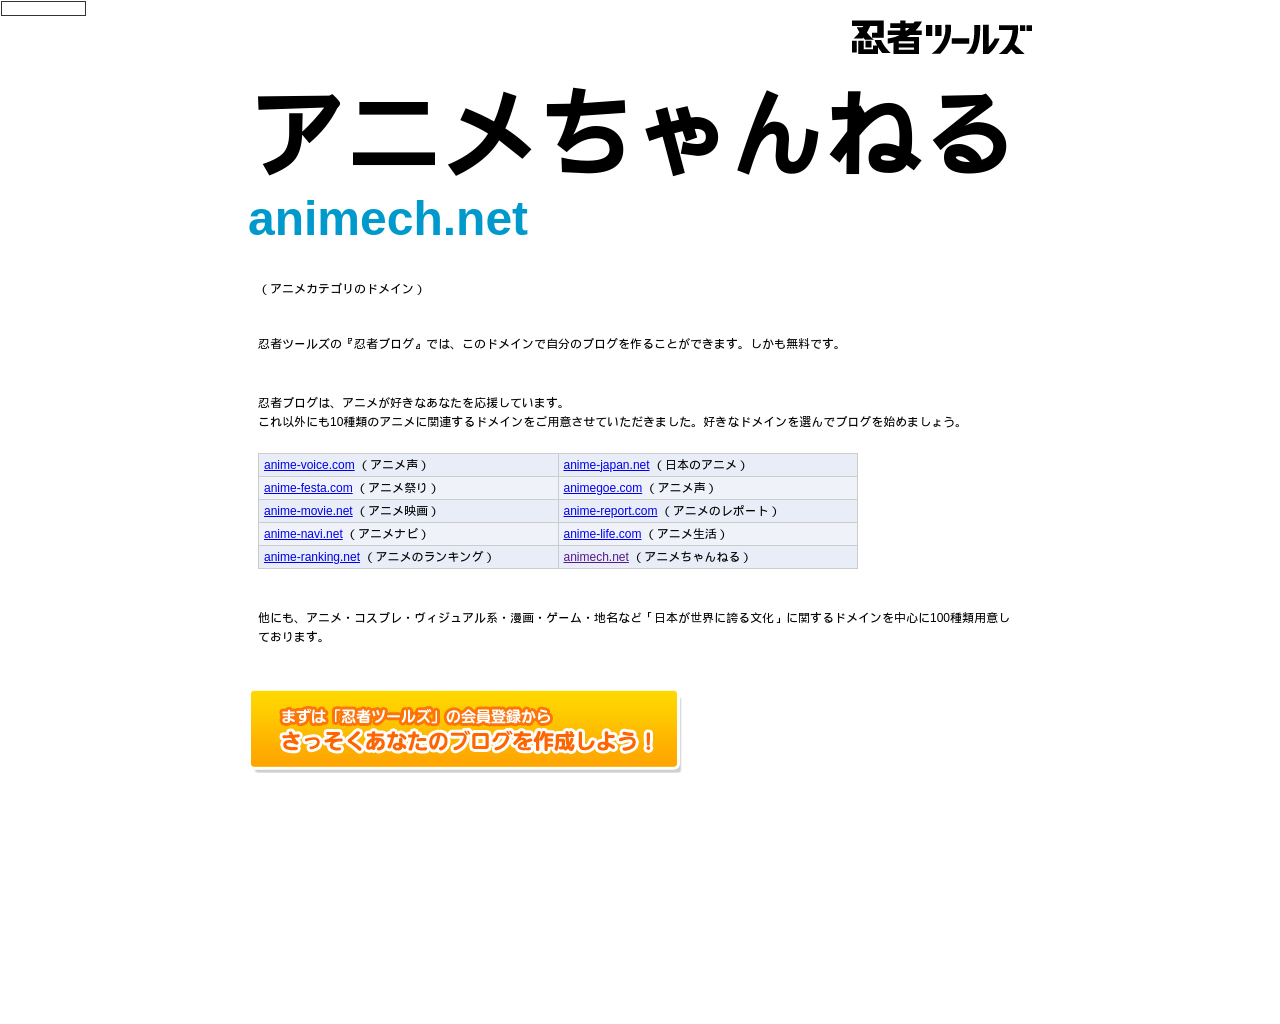 animech.net